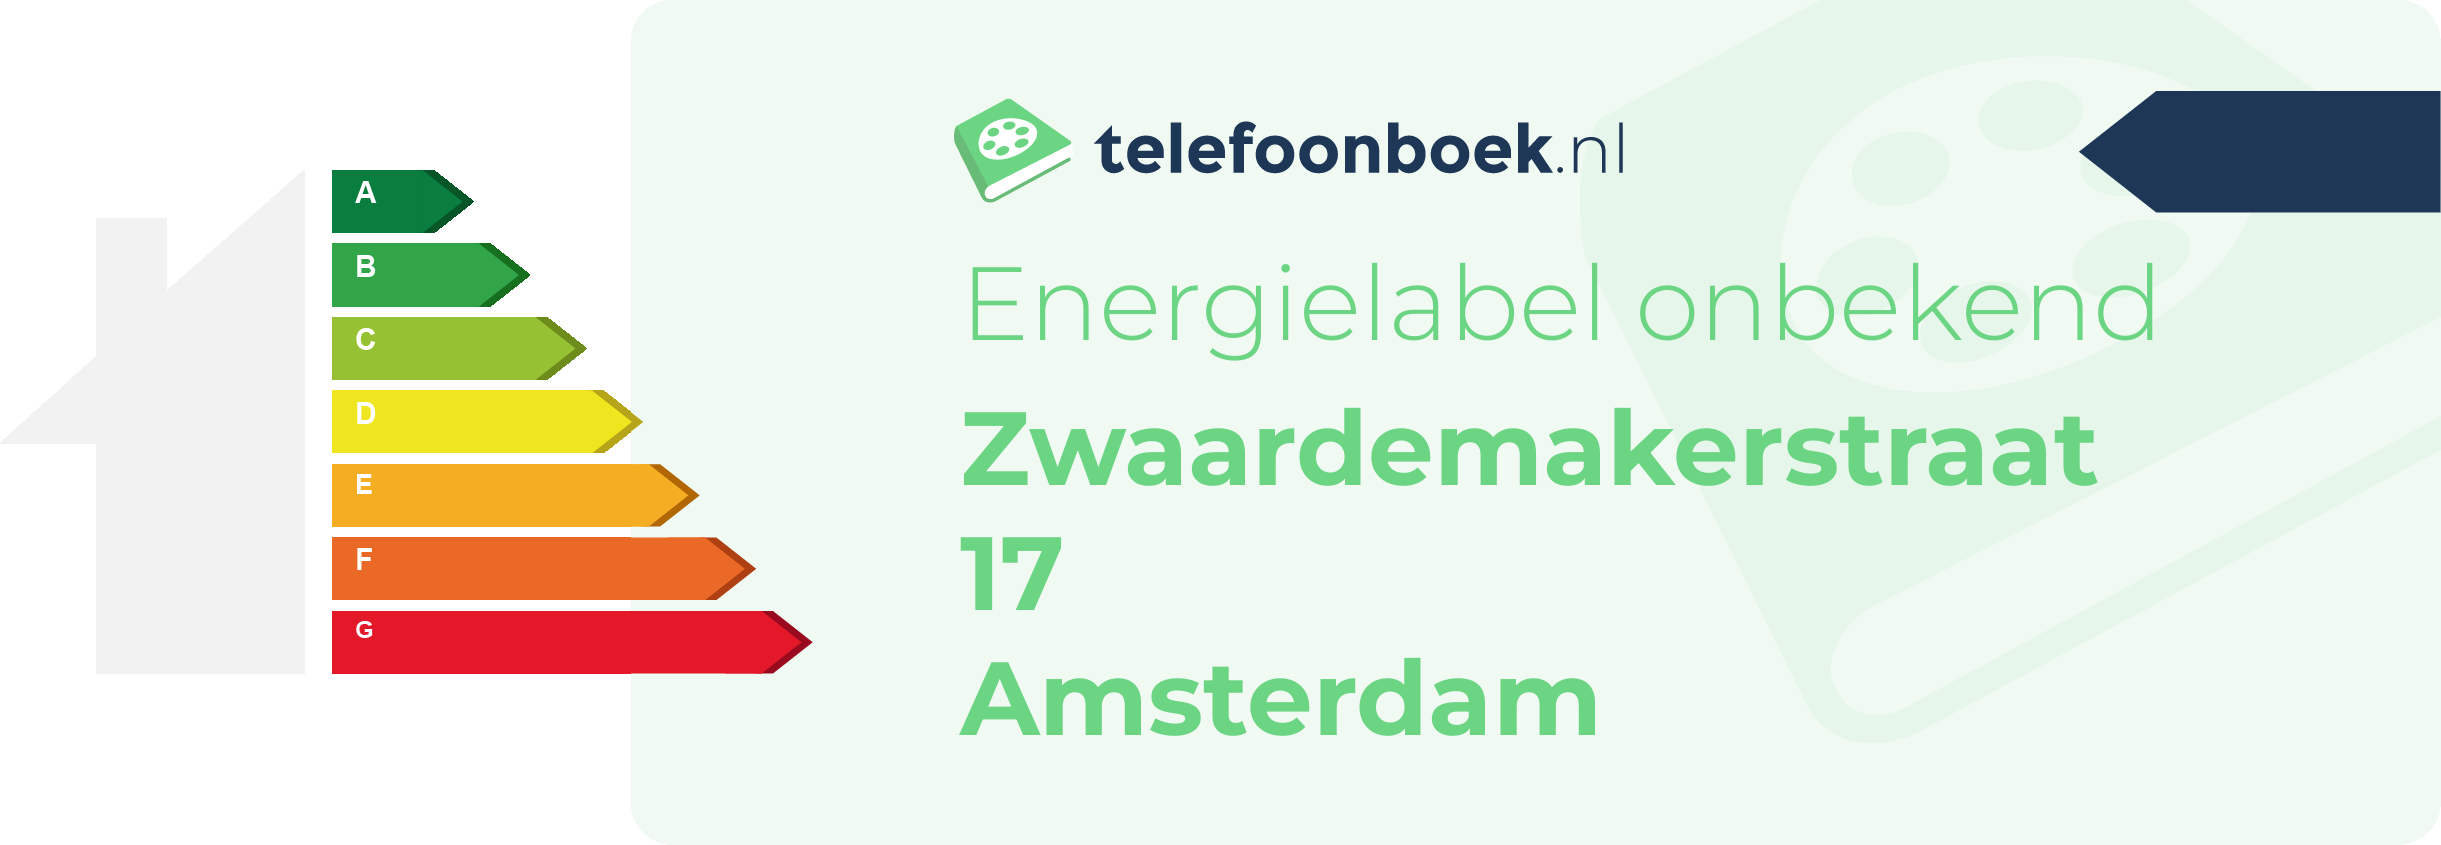 Energielabel Zwaardemakerstraat 17 Amsterdam